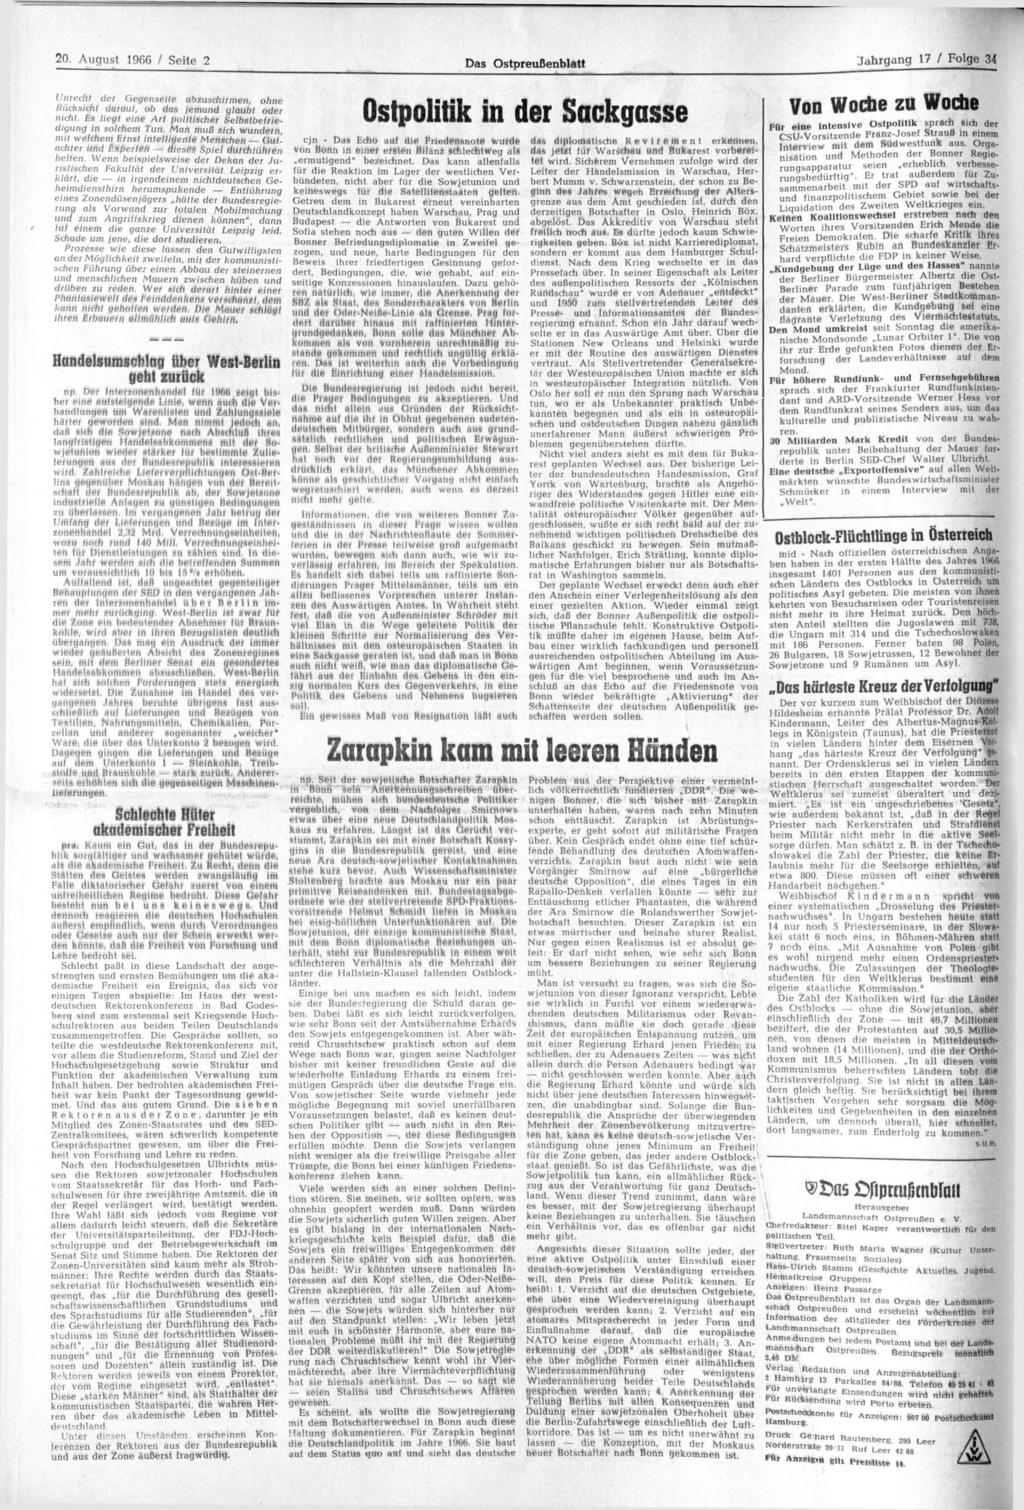 20. August 1966 / Seite 2 Das Ostpreußenblatt Jahrgang 17 / Folge 34 cjn - Das Echo auf die Friedensnote wurde Von Bonn in einer ersten Bilanz schlechtweg als ermutigend" bezeichnet.